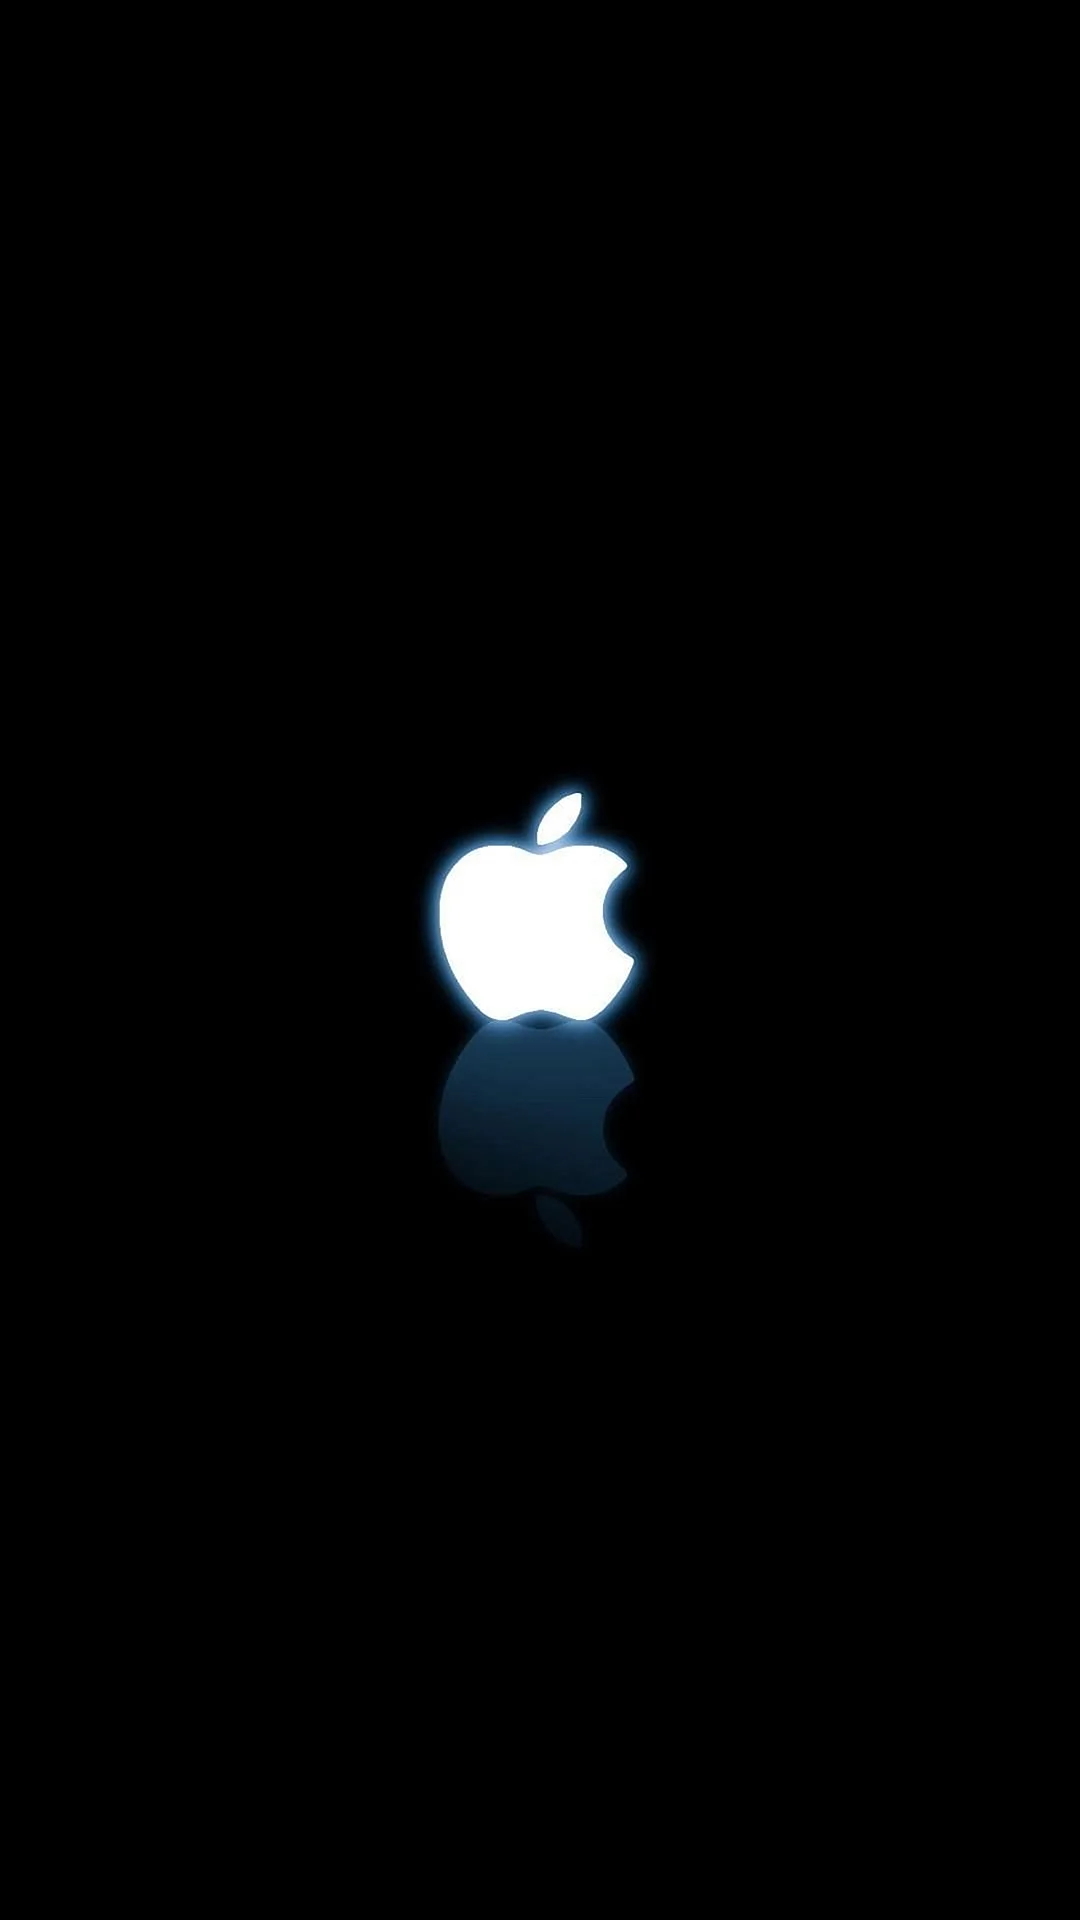 Apple на черном фоне